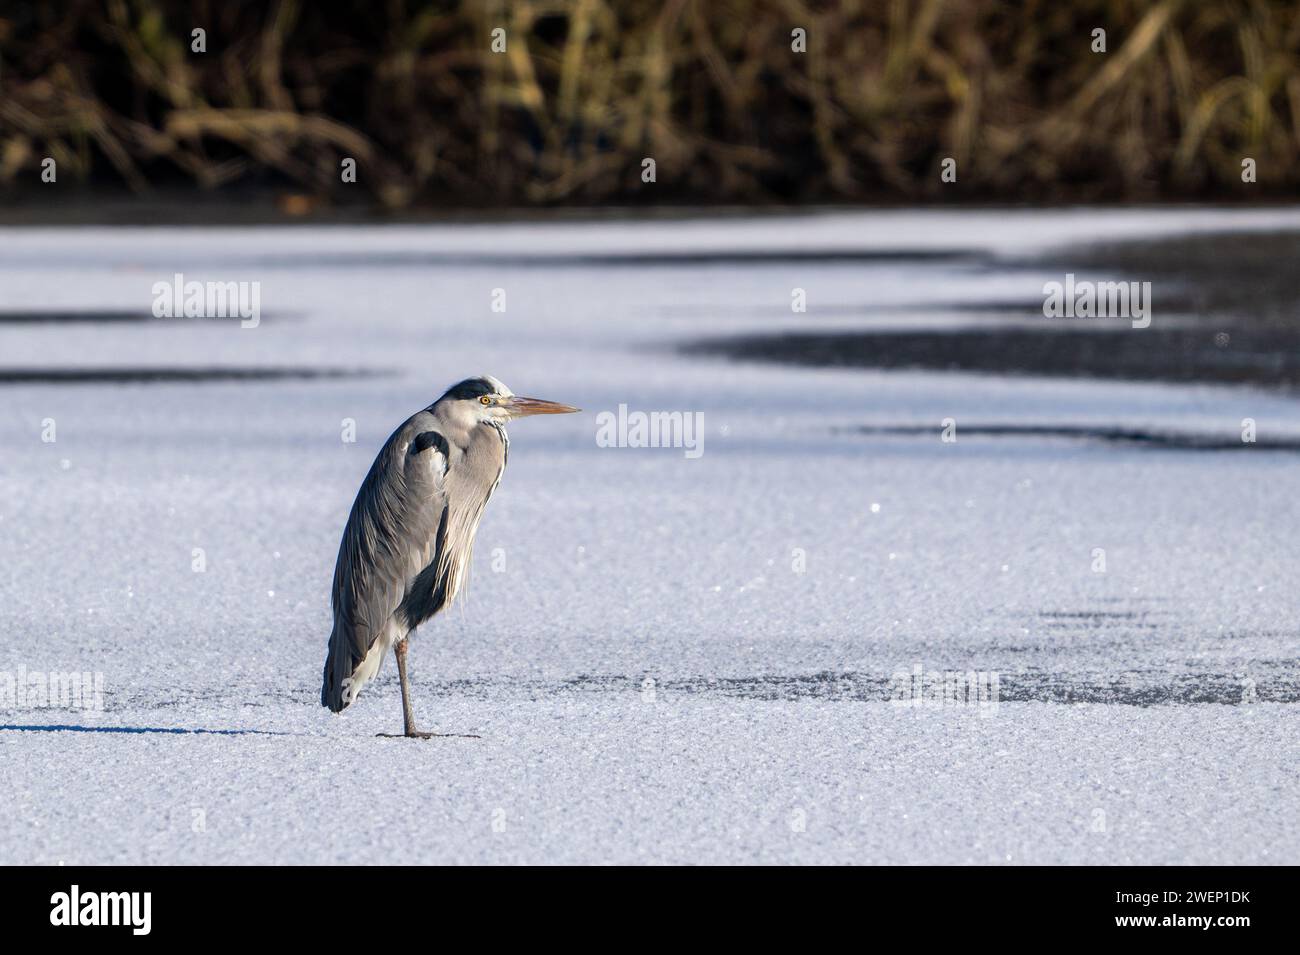 Garza gris (Ardea cinerea) de pie en el hielo del lago congelado en invierno Foto de stock